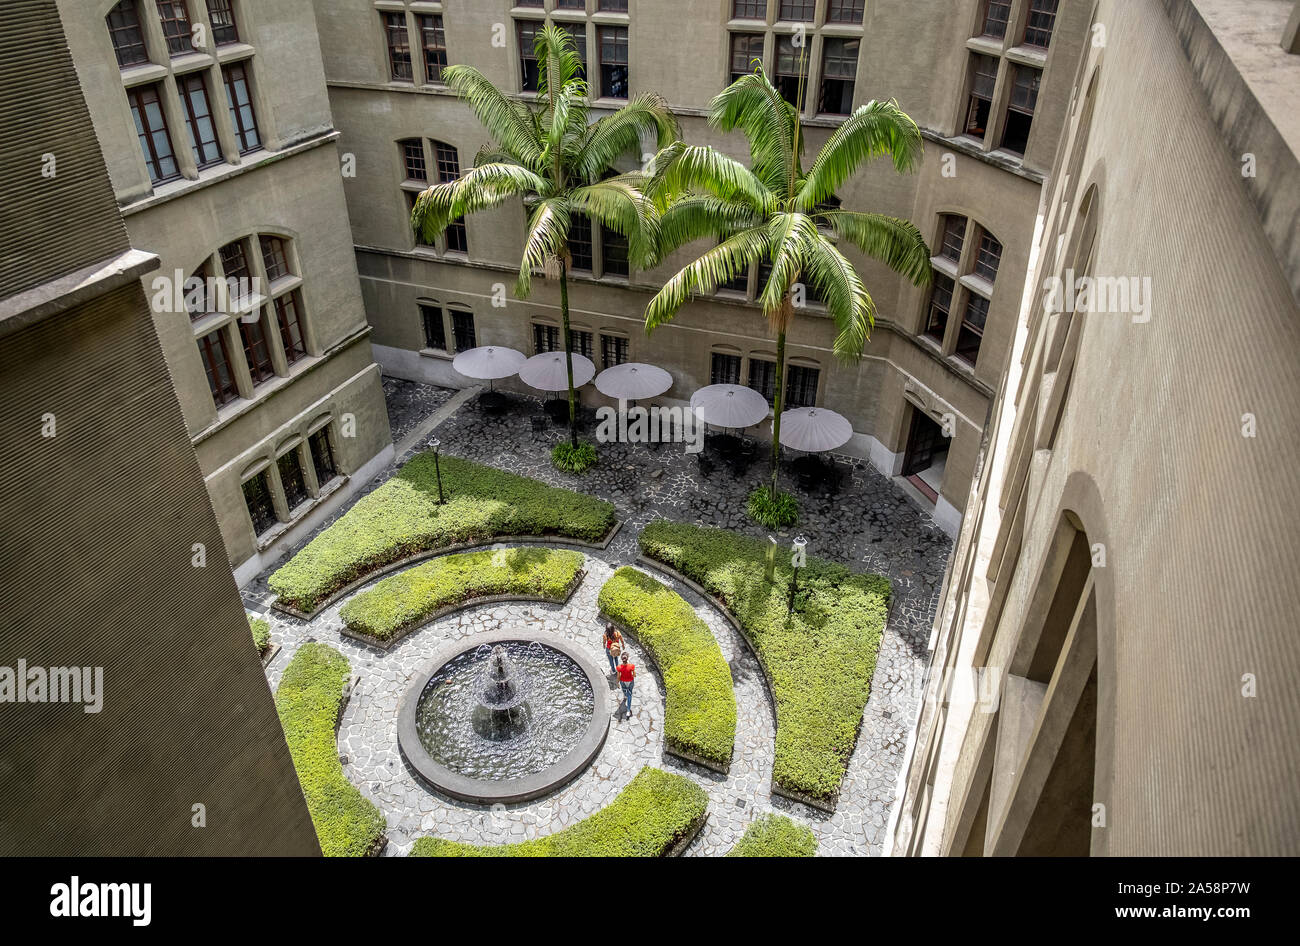 Courtyard of Palacio de la cultura, Rafael Uribe Uribe, Palace of Culture, Medellín, Colombia Stock Photo